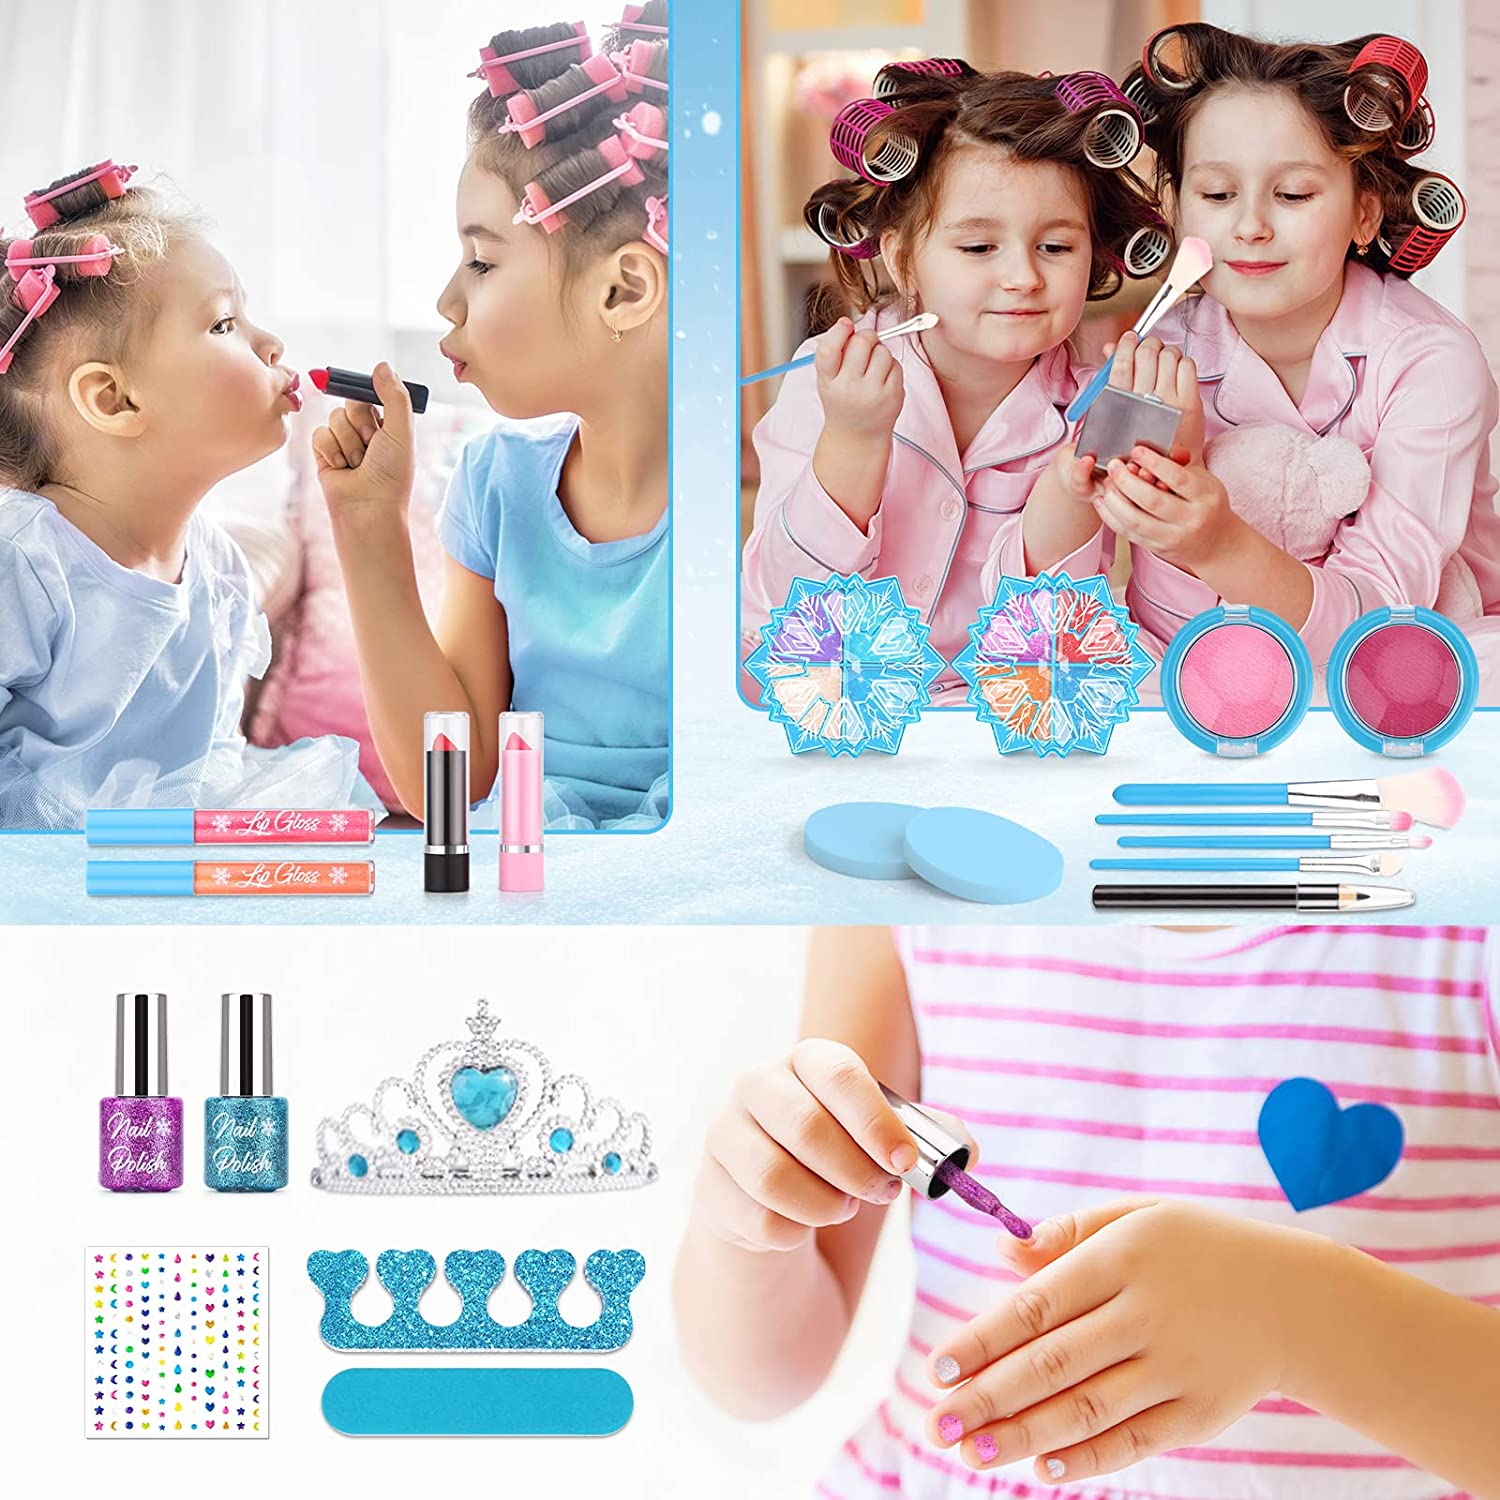 Kids Makeup Kit for Girls, Washable Real Makeup Set for Little Girls ...